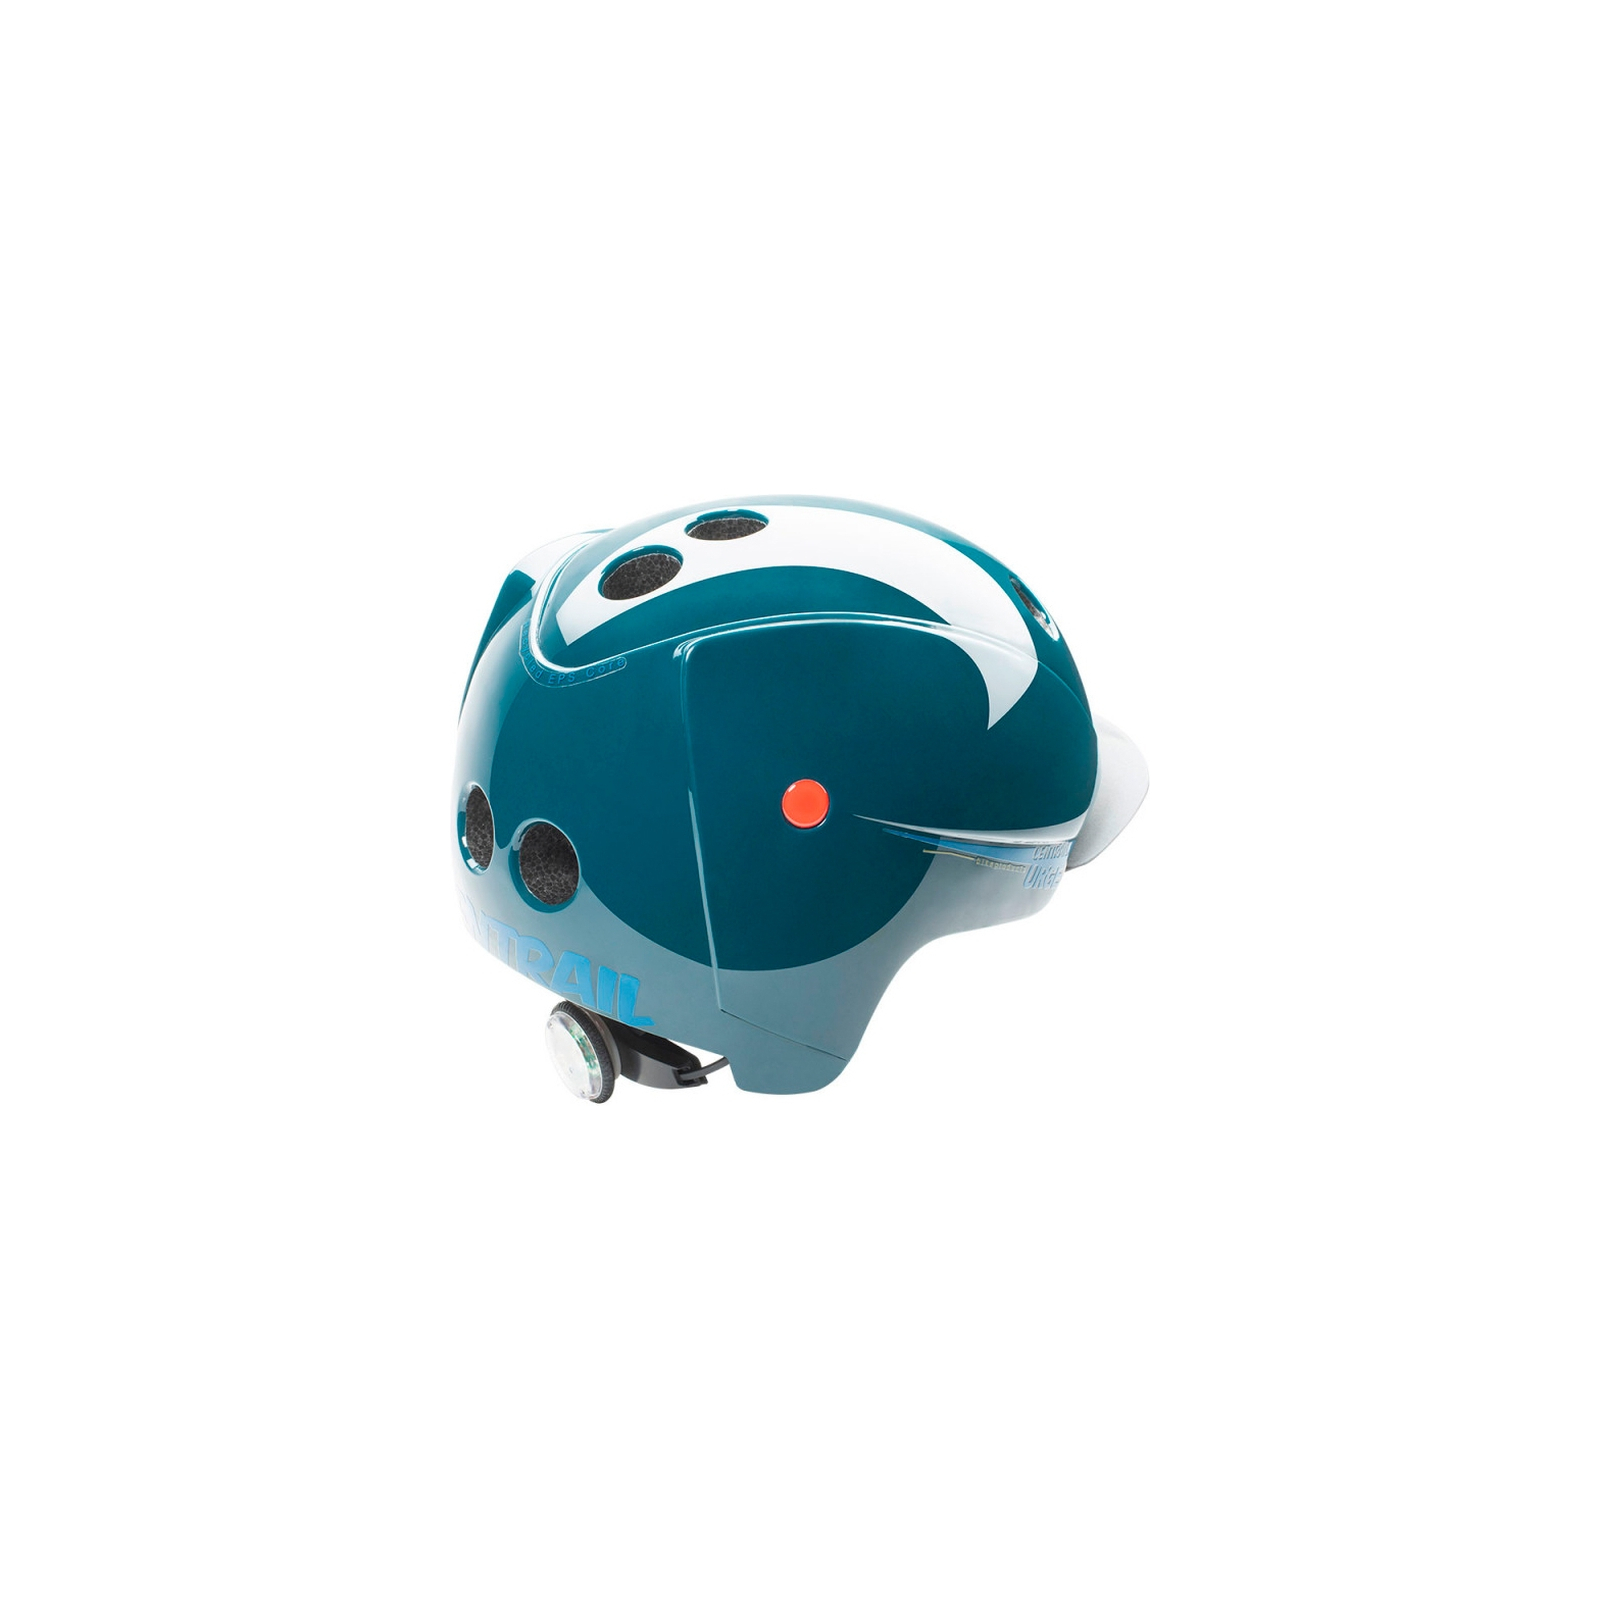 Шлем Urge Centrail Світлоповертальний L/XL 57-59 см (UBP22193L) изображение 3